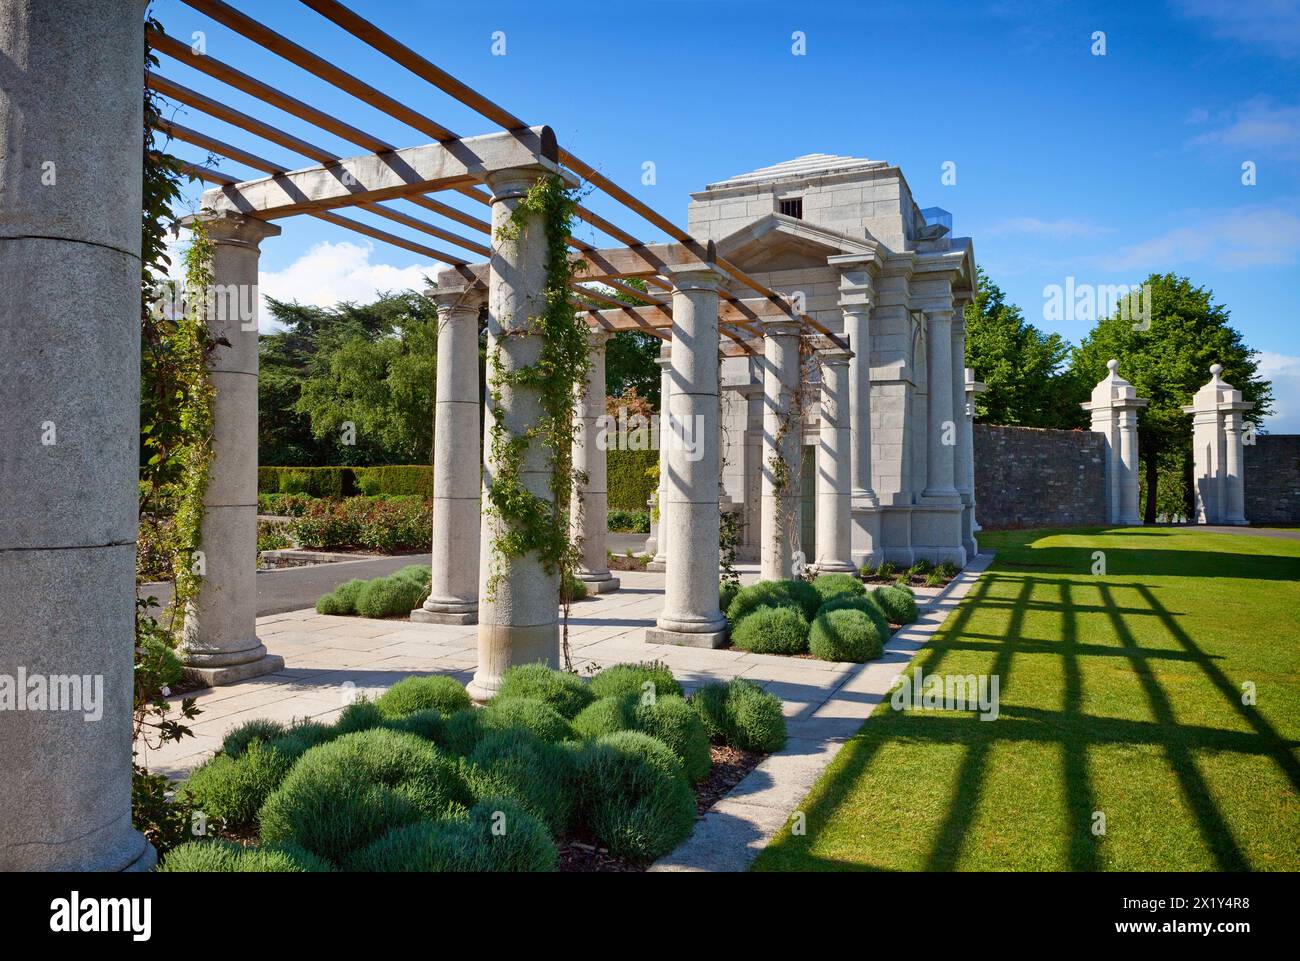 Au-dessus des deux jardins en terrasses encastrés se trouvent deux paires de chambres à livres, reliées par une pergola, chacune représentant une province irlandaise, et tenant l'Ill Banque D'Images